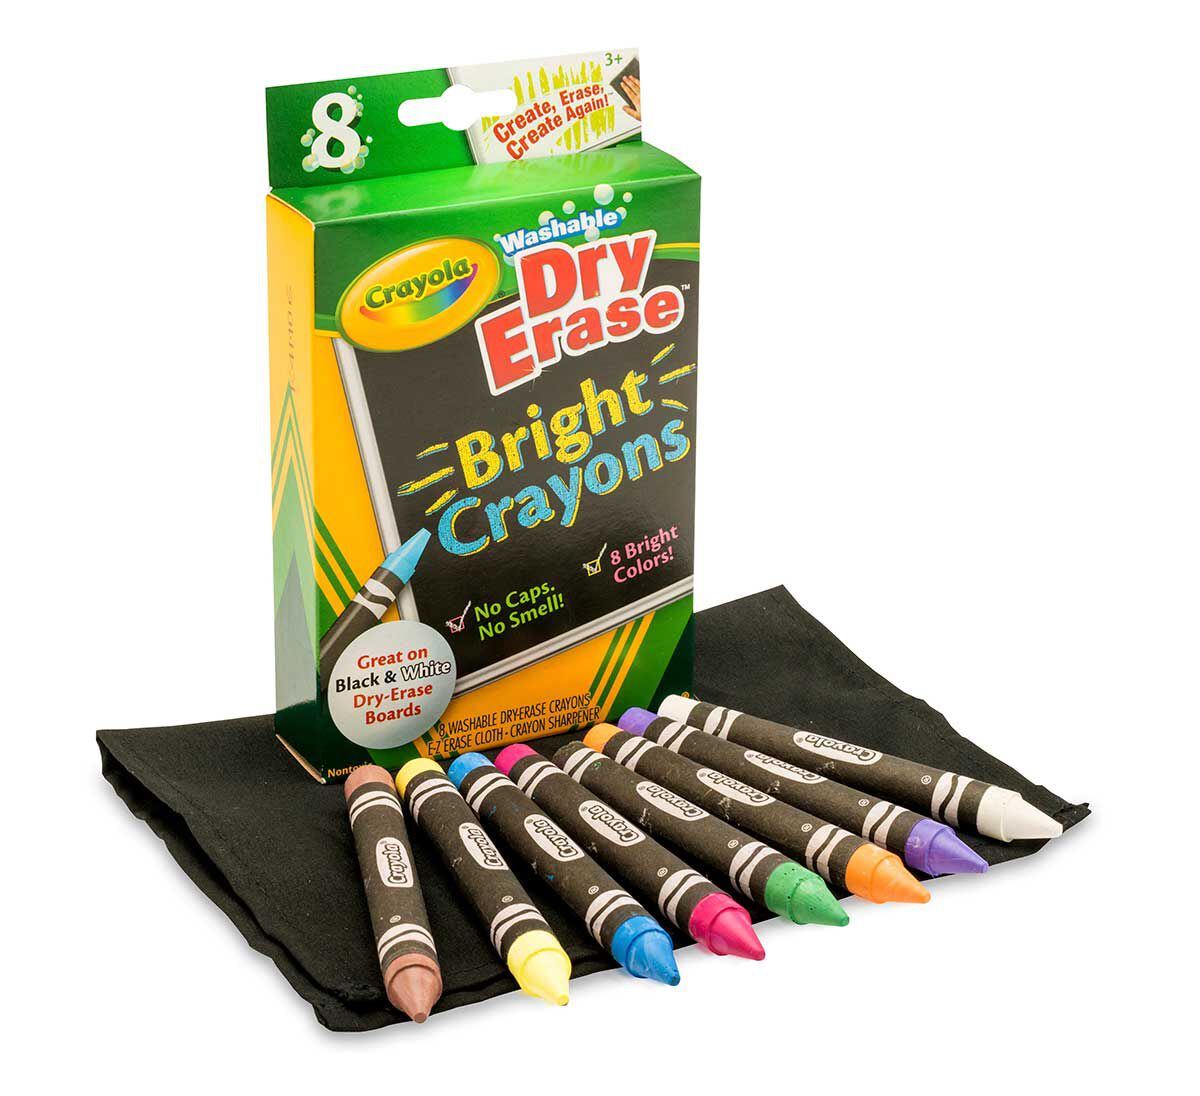 Crayola Crayola Dry Erase Washable Crayons 8/Pkg Brights by Crayola Bulk Buy 